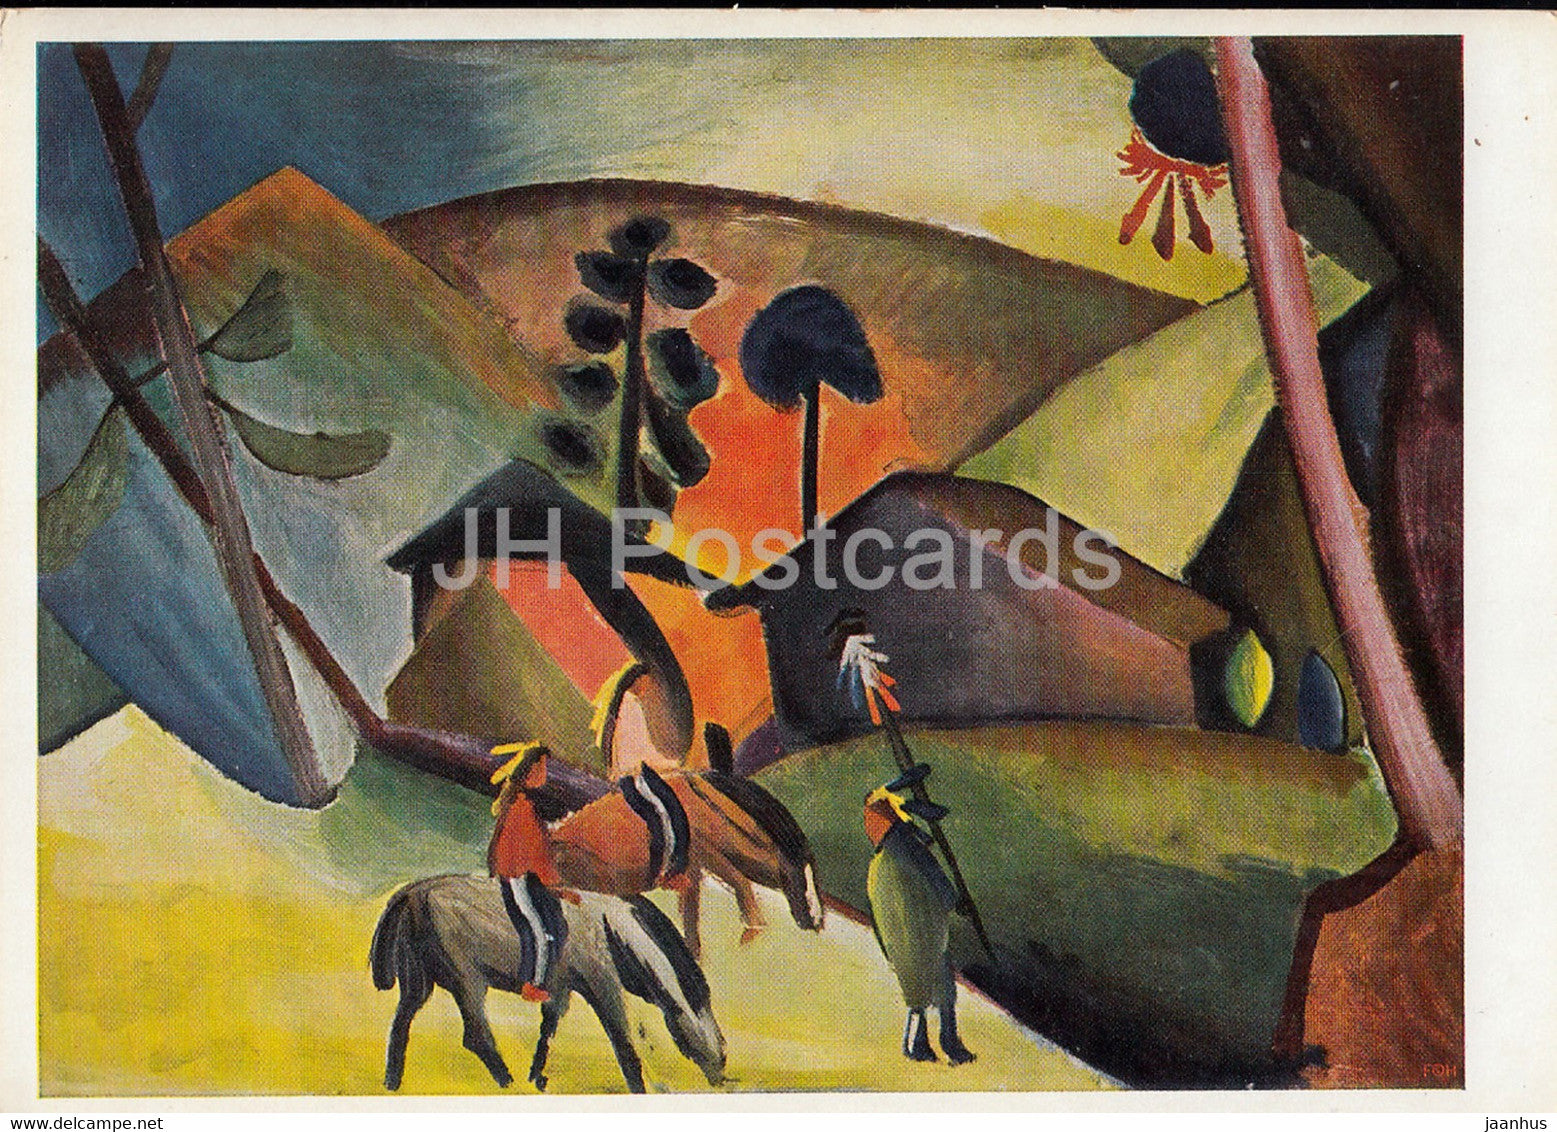 painting by August Macke - Indianer auf Pferden - Indians on Horseback - 565 - German art - Germany - unused - JH Postcards